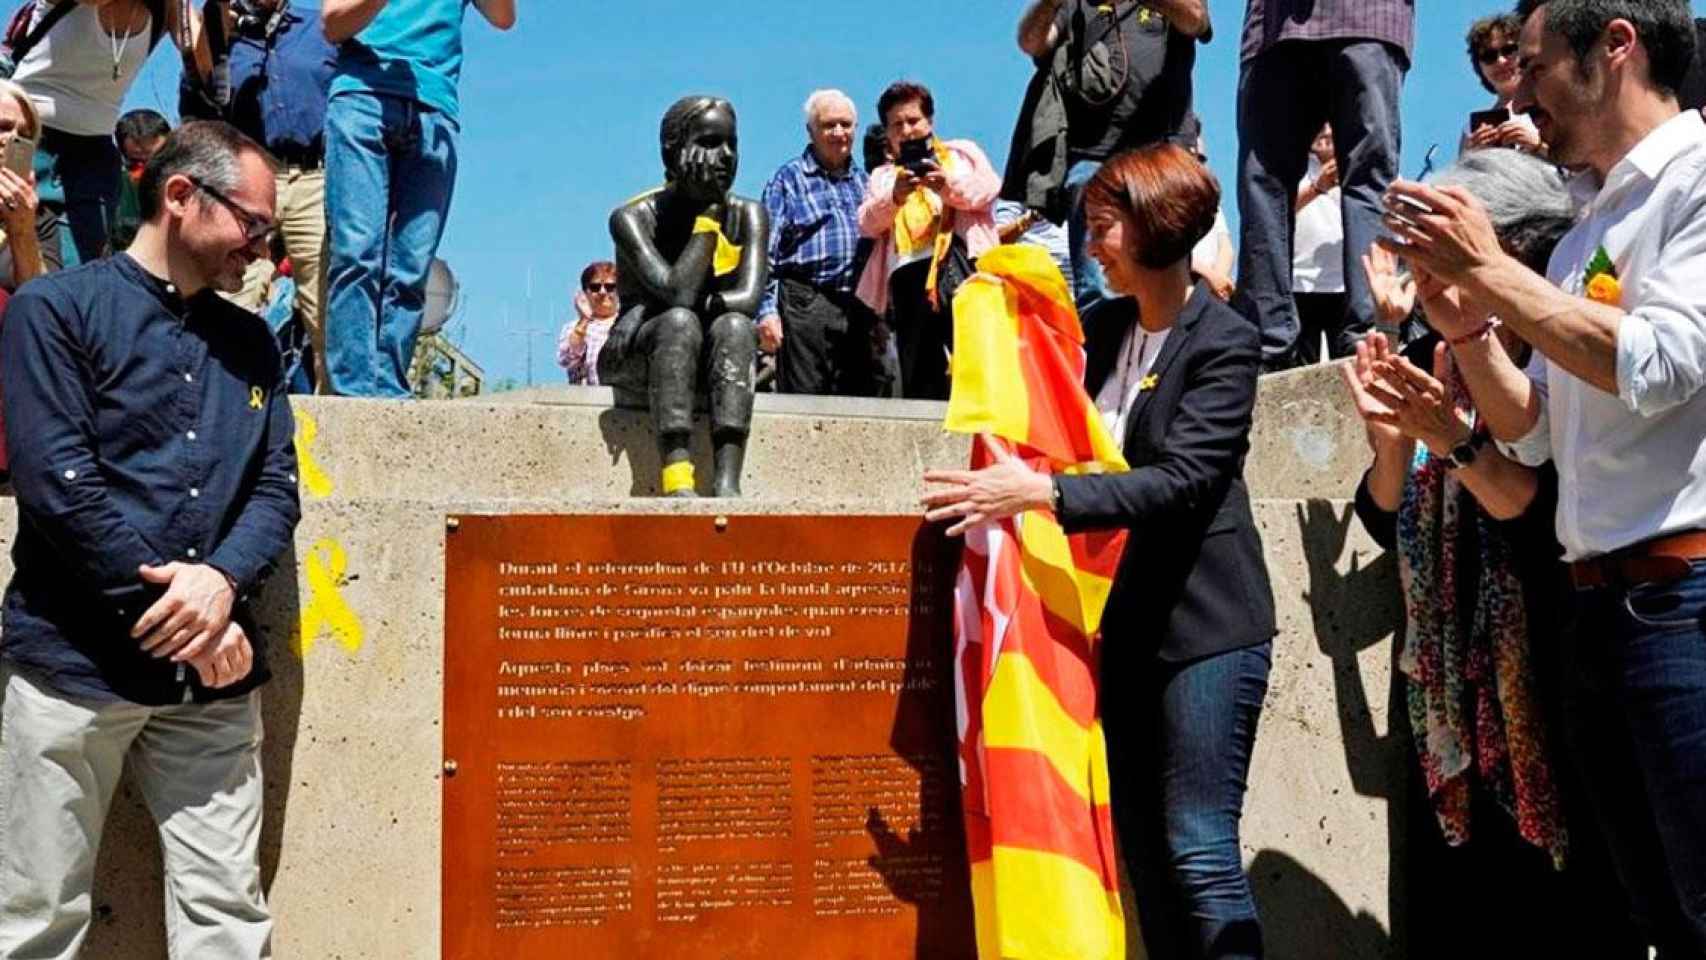 Inauguración de la plaza 1 de octubre de Girona, con la alcaldesa Marta Madrenas (d) descubriendo la placa / EFE